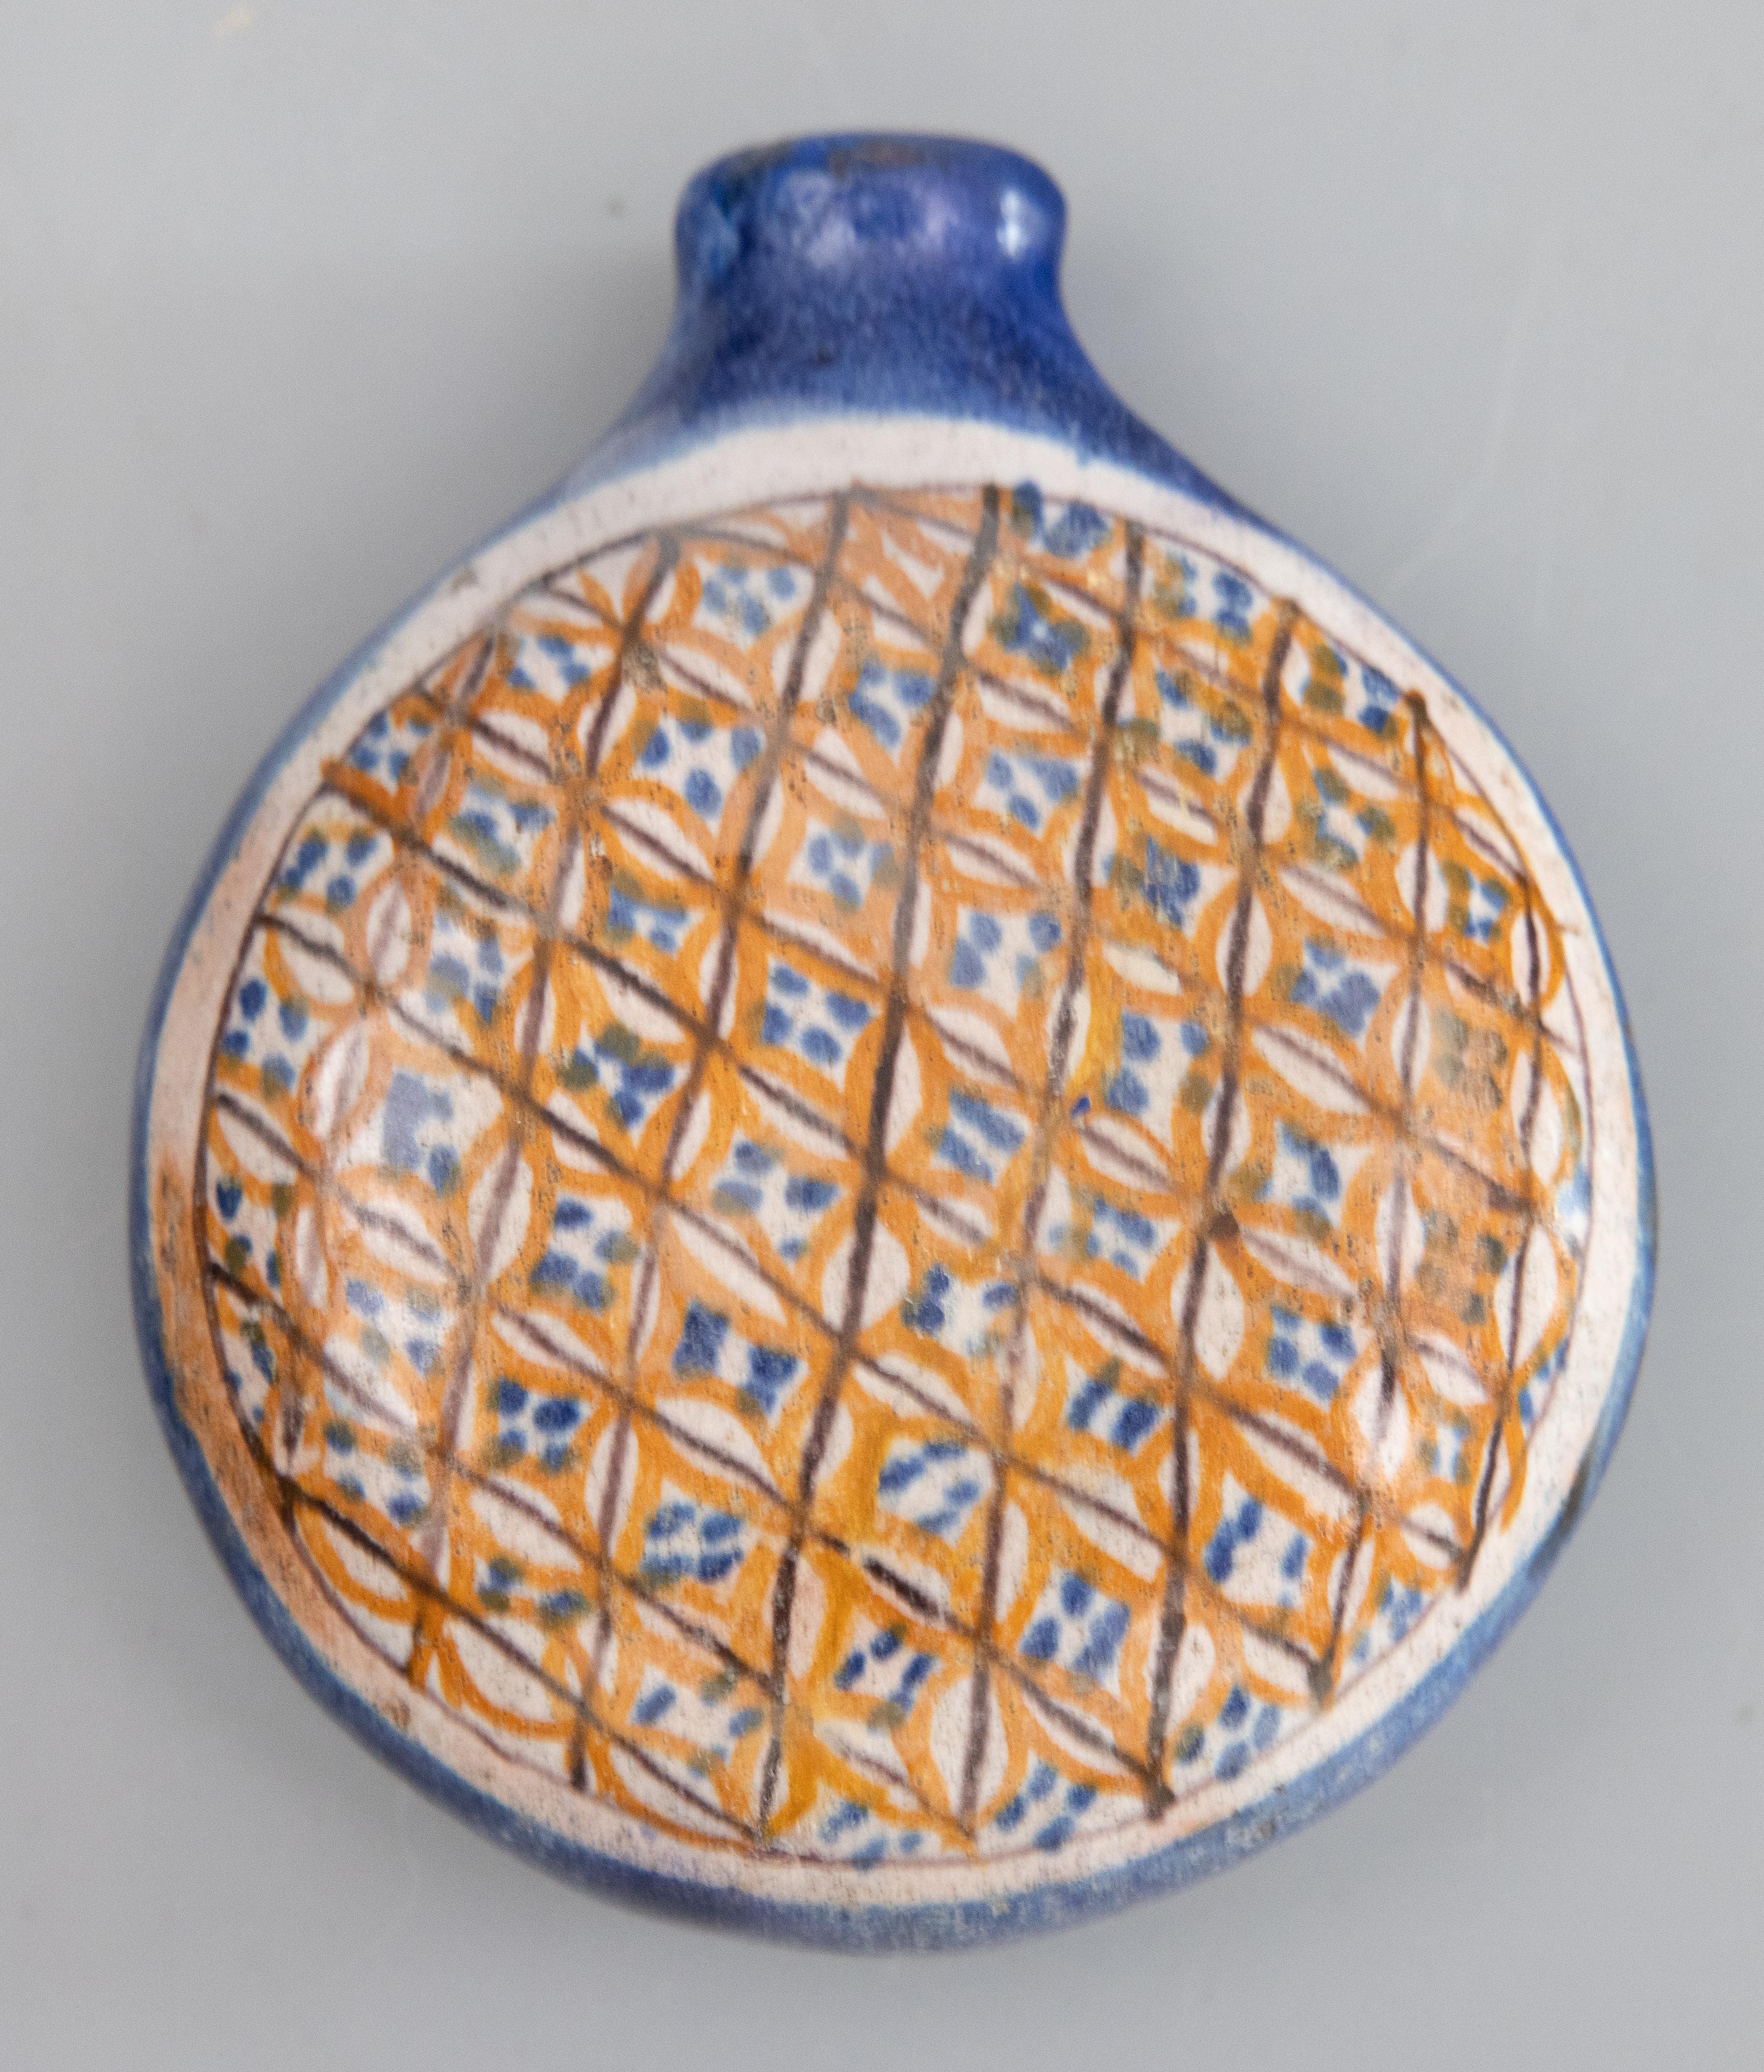 Un joli flacon rond et plat en faïence de Quimper, peint à la main par des artisans français. Il s'agit d'un rare flacon de tabac à priser daté de 1900, très intéressant pour la collection, avec un motif de guirlande florale sur une face et un motif